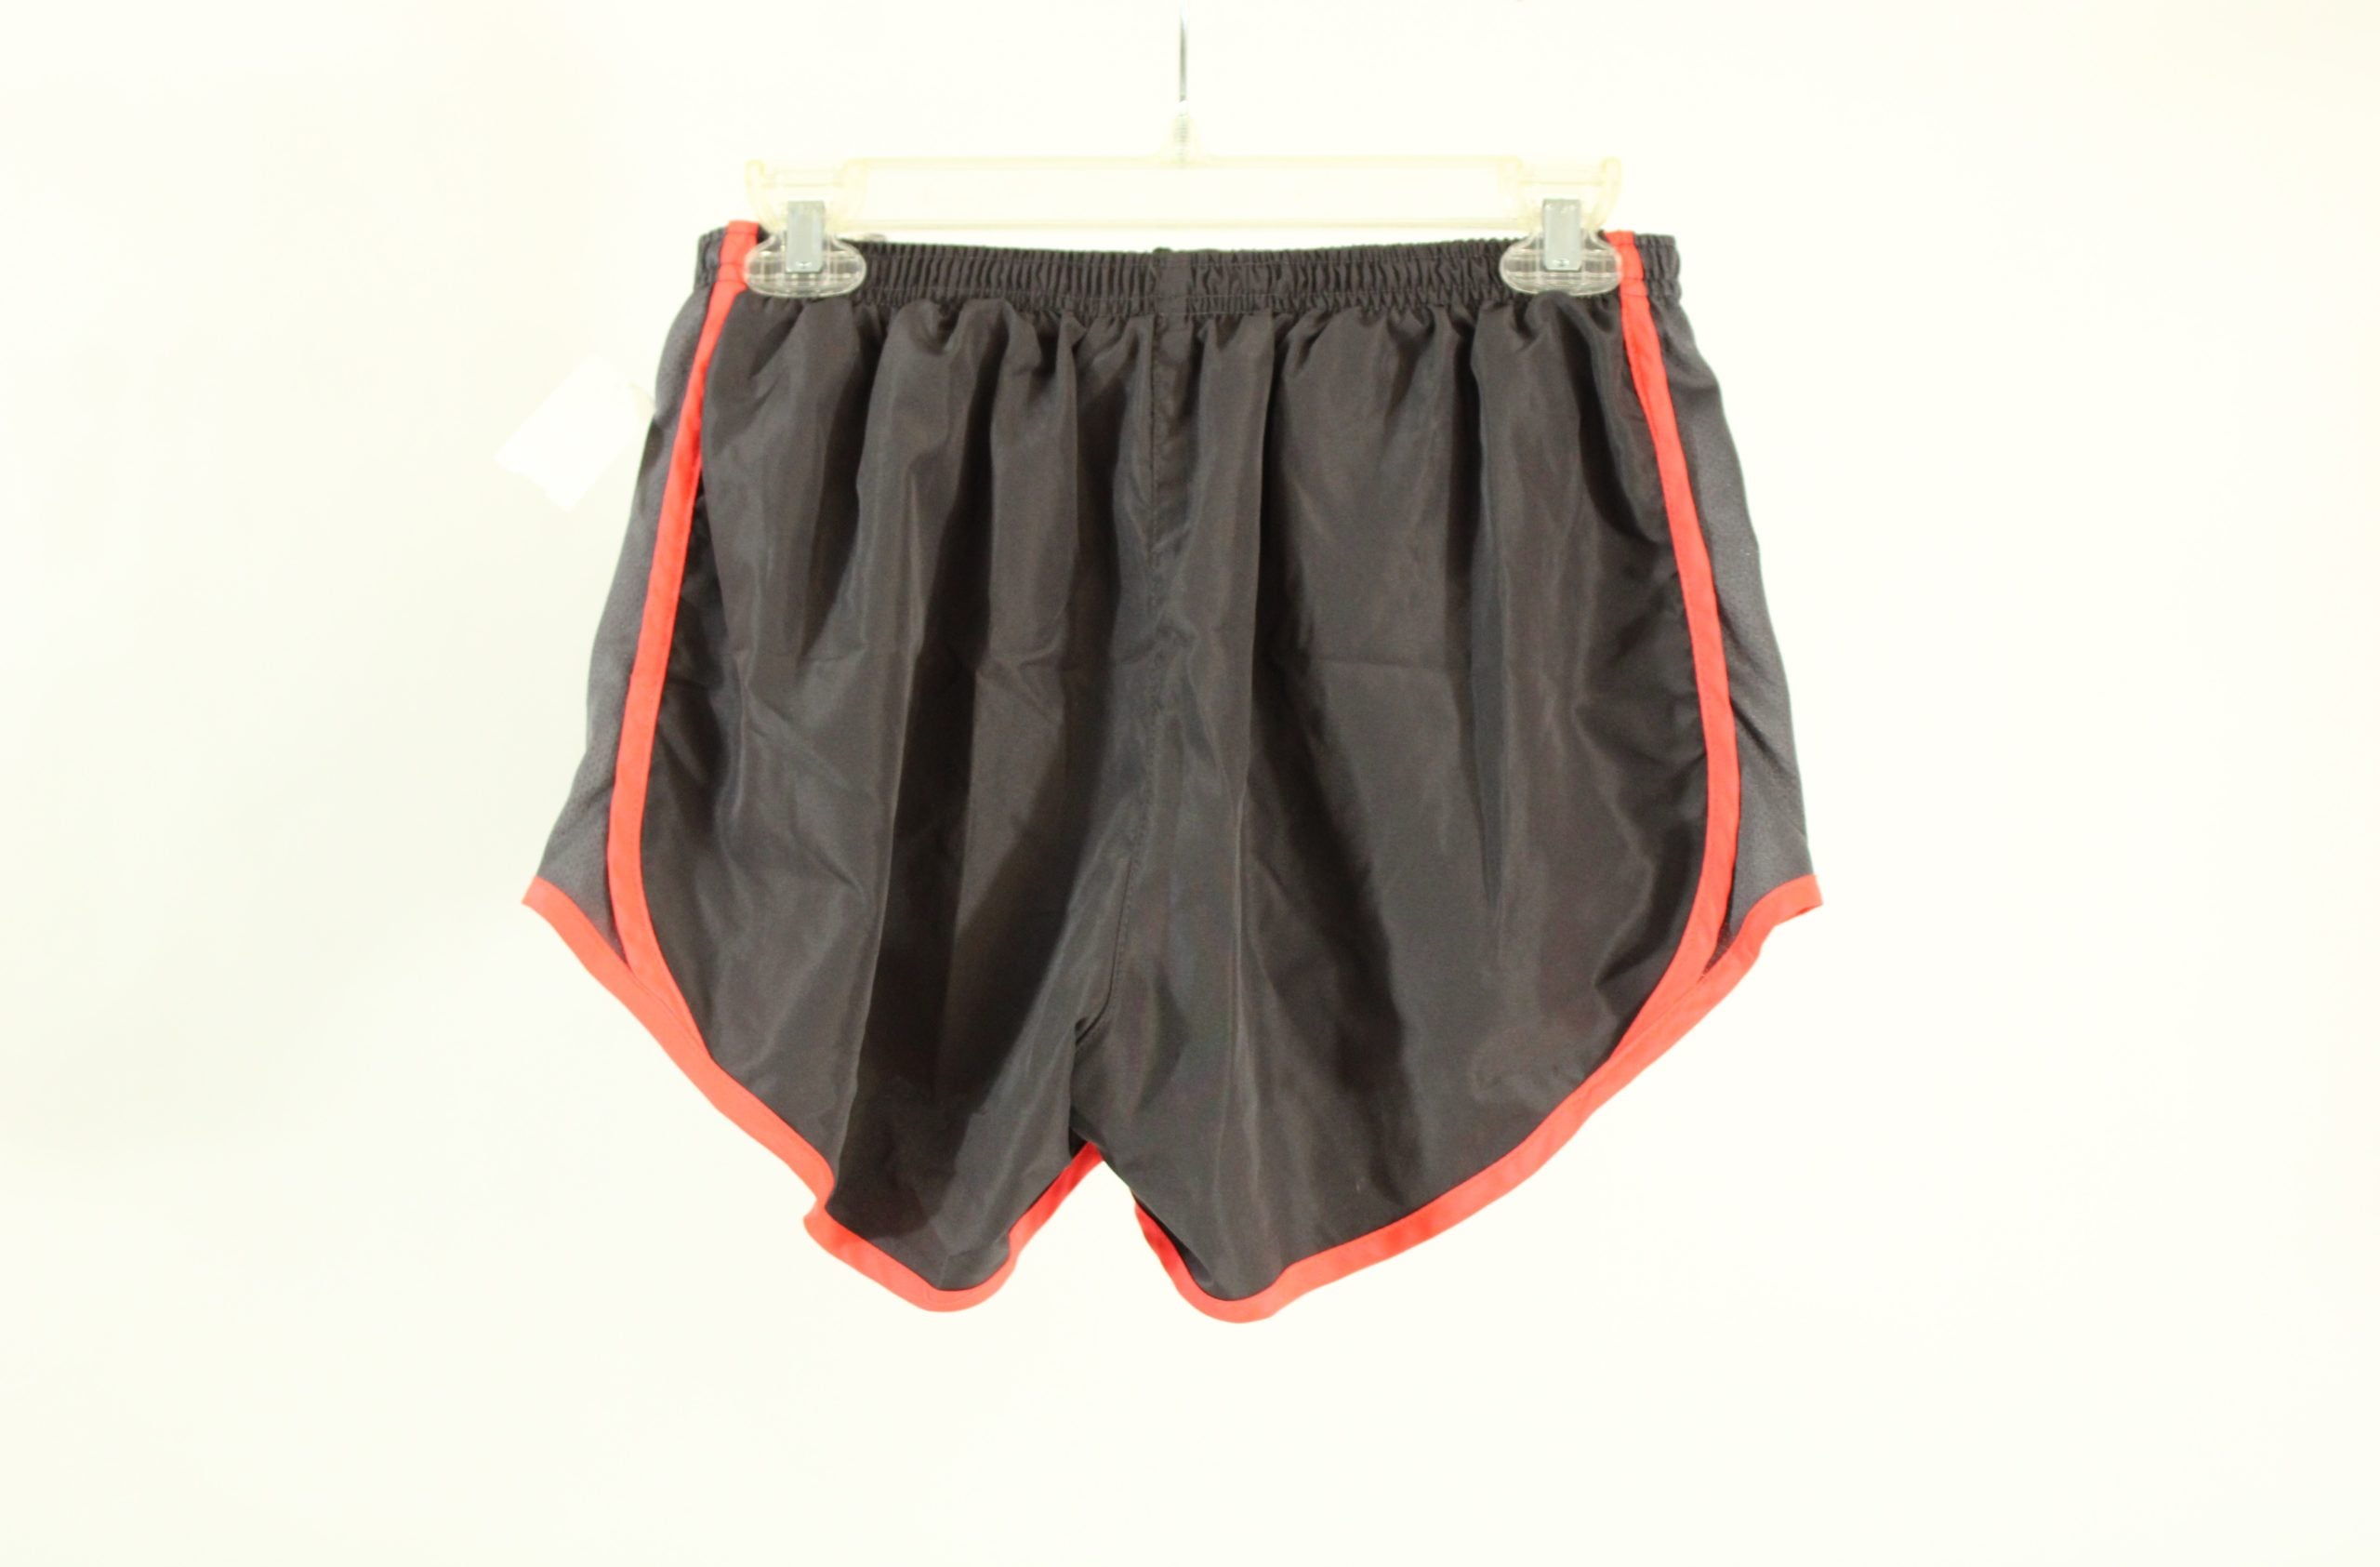 Bhac Perform Gray & Orange Athletic Shorts | Size M